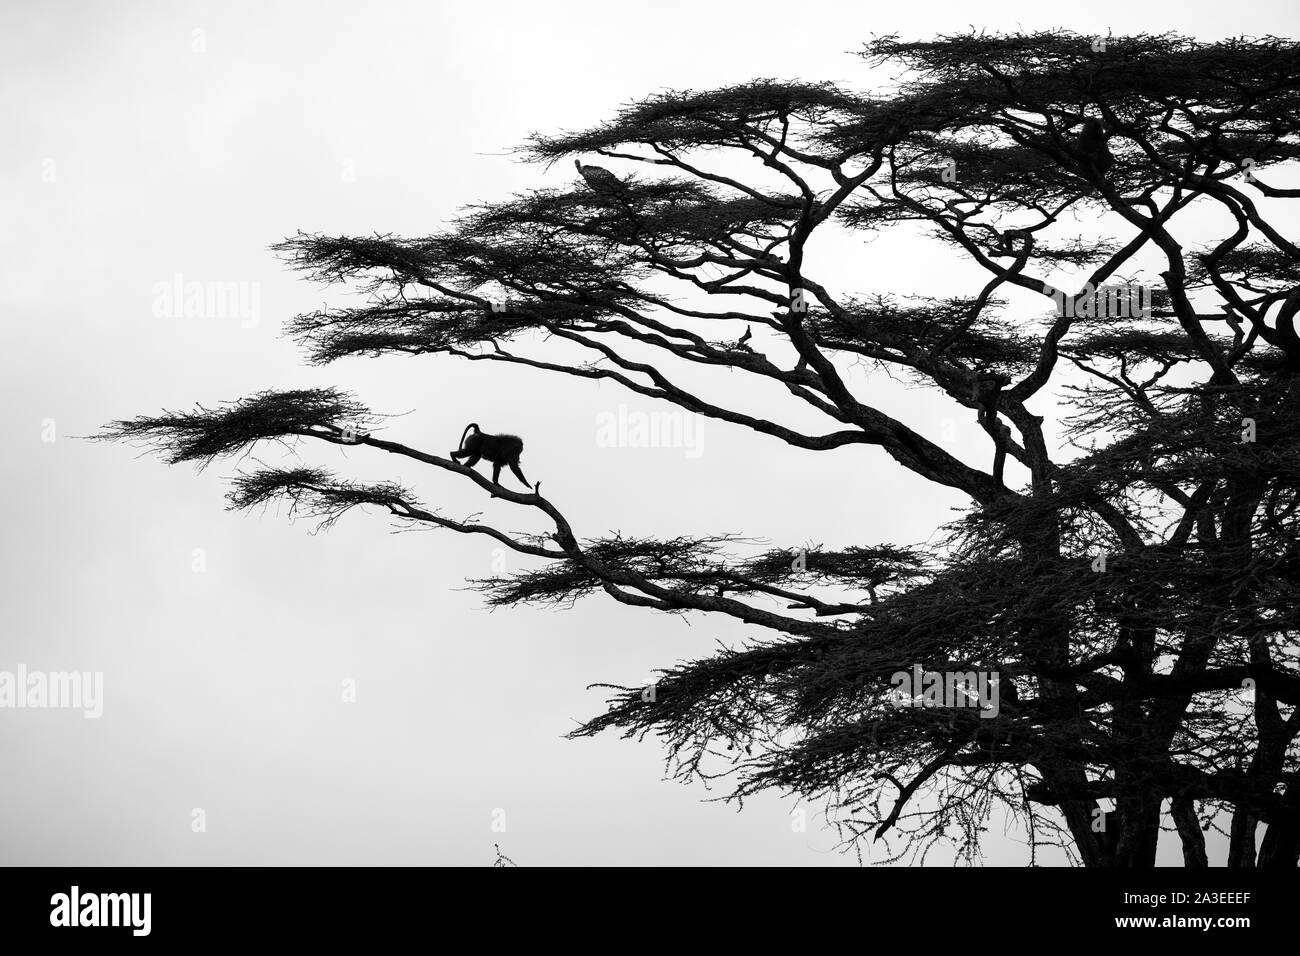 L'Afrique, Tanzanie, zone de conservation Ndutu, Babouin Chacma mâles adultes (Papio ursinus) descendre le long du membre de l'acacia tree Plaines Ndutu Banque D'Images